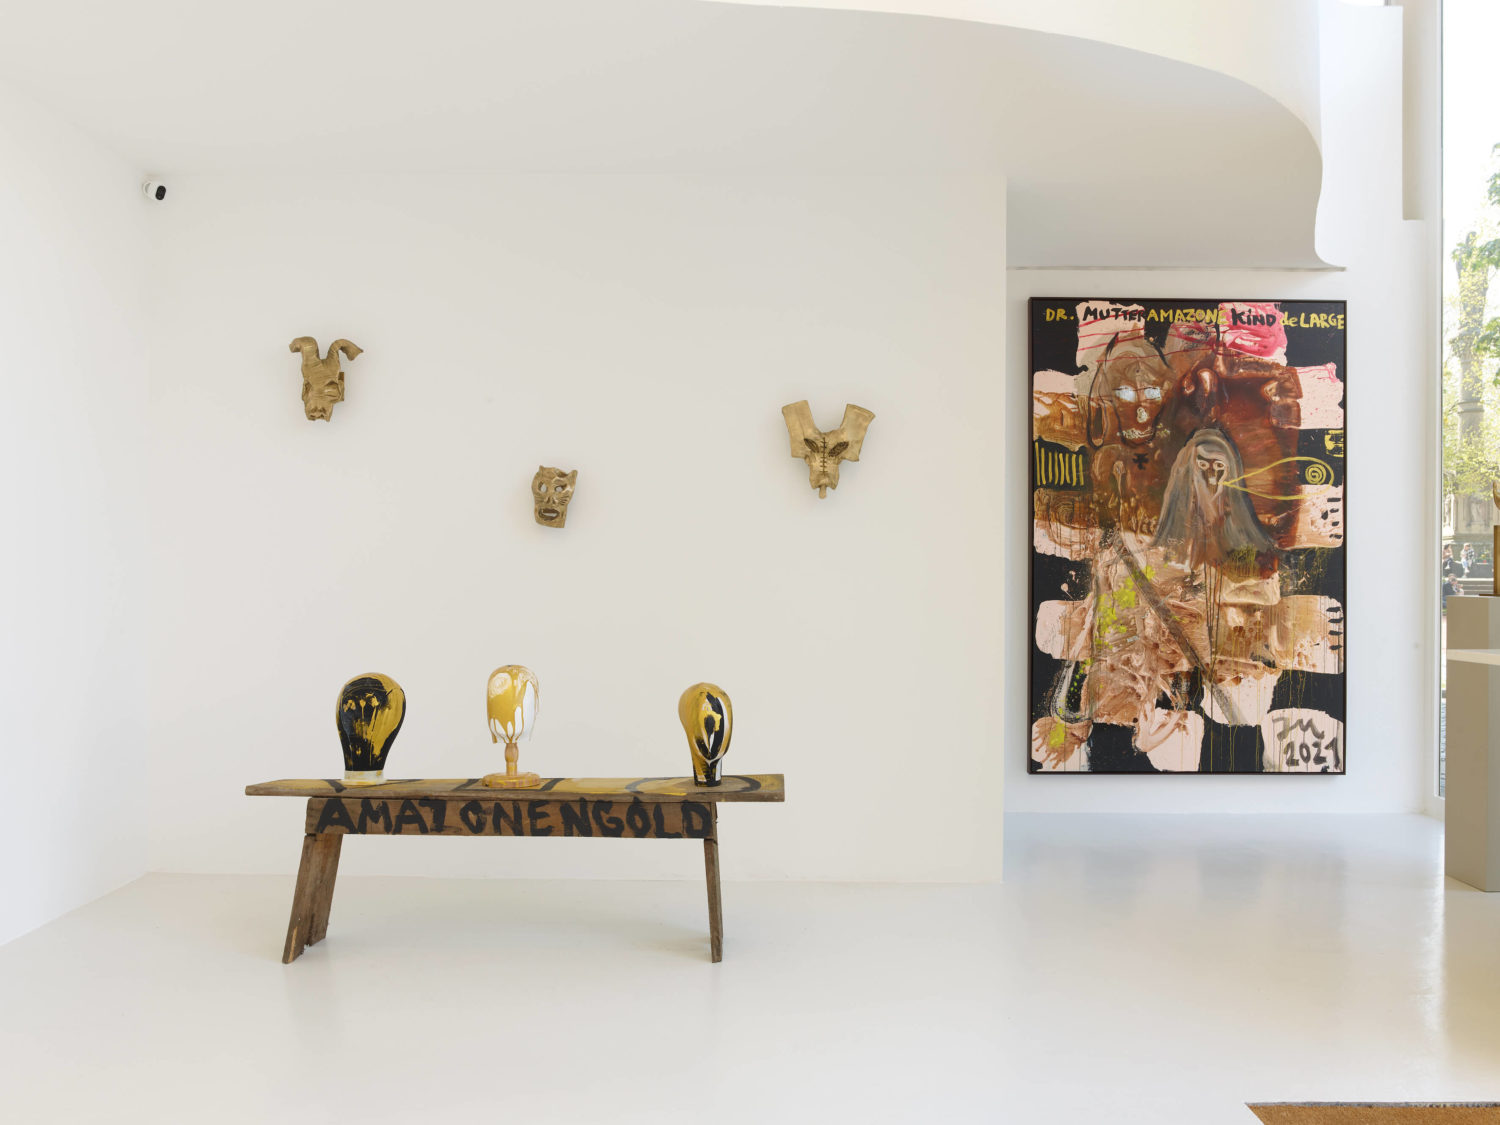 Das Bild zeigt eine Ausstellungsansicht der Ausstellung "AMAZONENGOLD de LARGE" des Künstlers Jonathan Meese in der Galerie Sies + Höke in Düsseldorf.